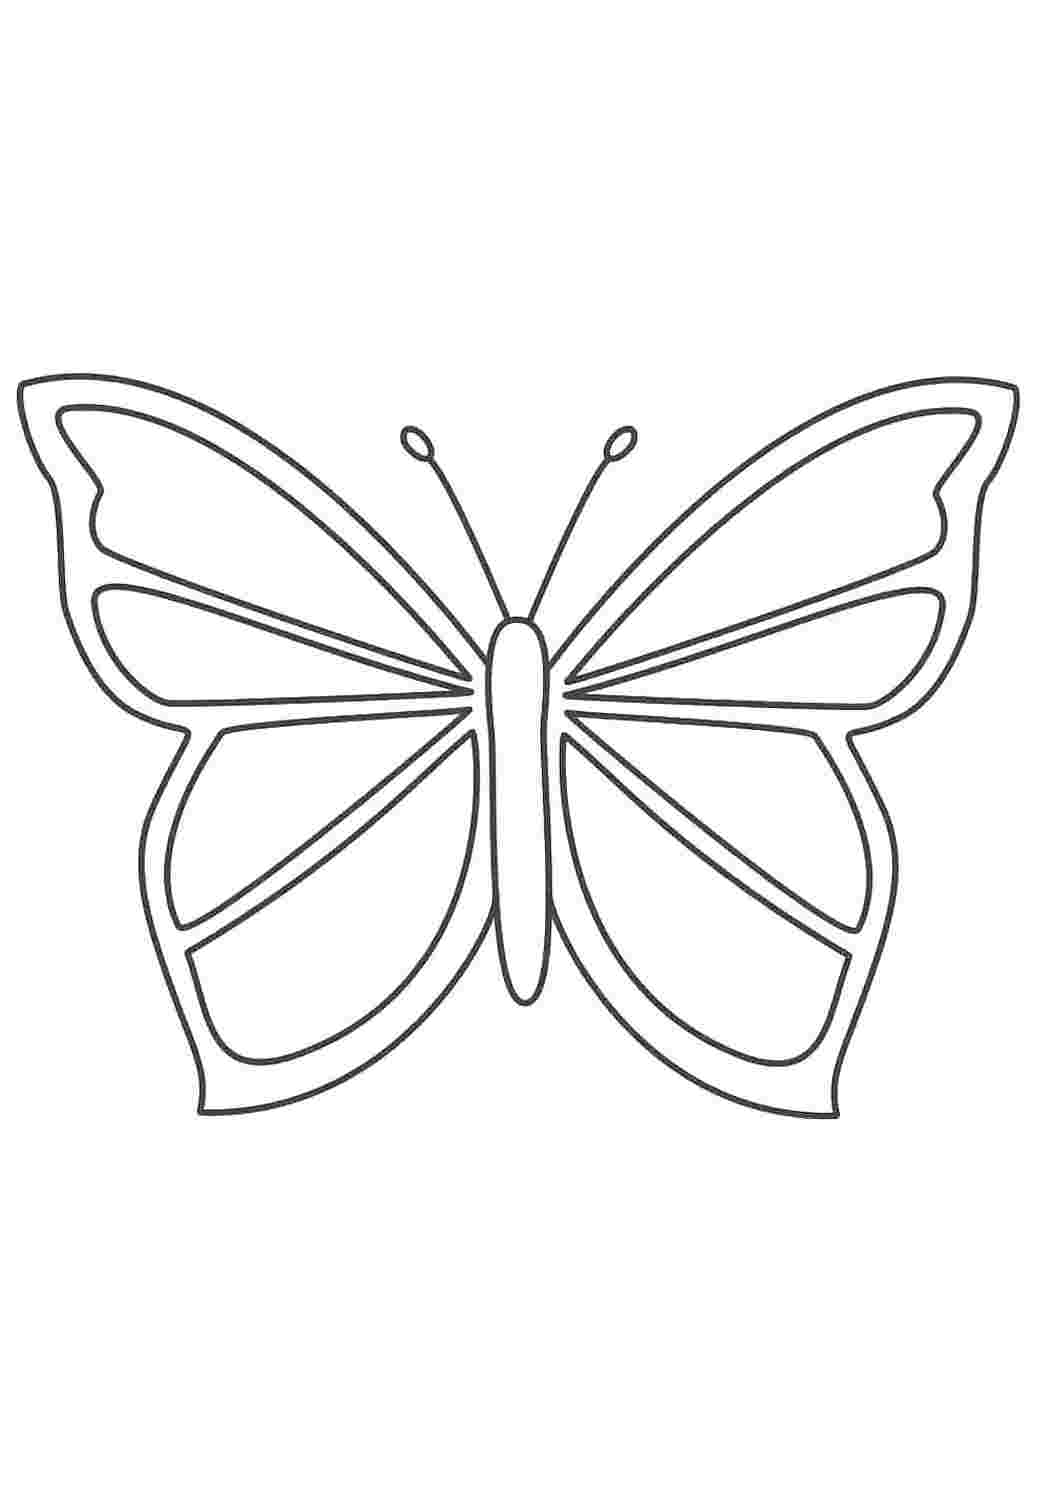 Раскраска бабочка простая